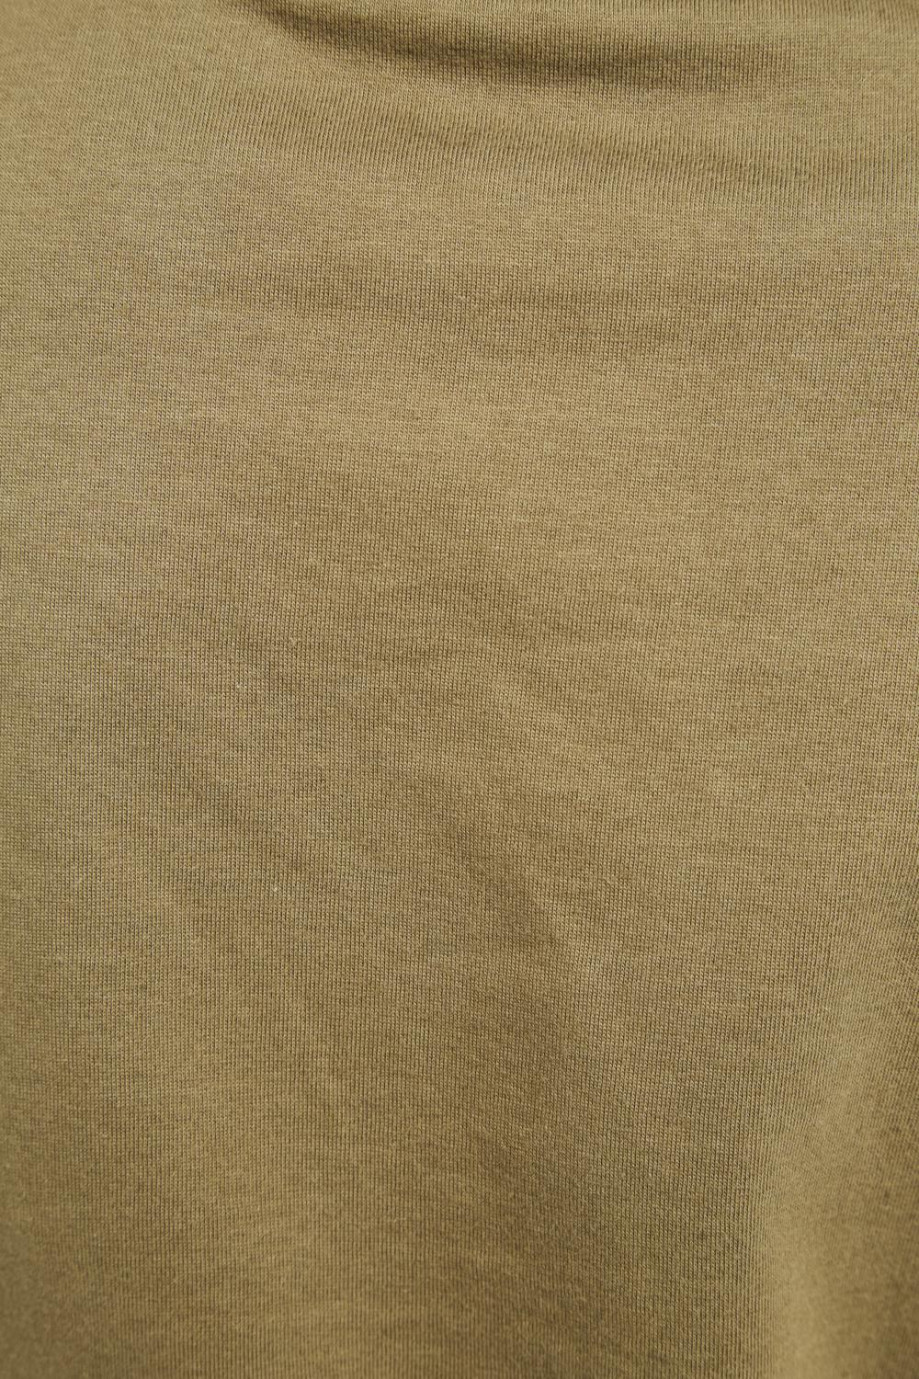 Camiseta unicolor crop top con cuello redondo y manga corta